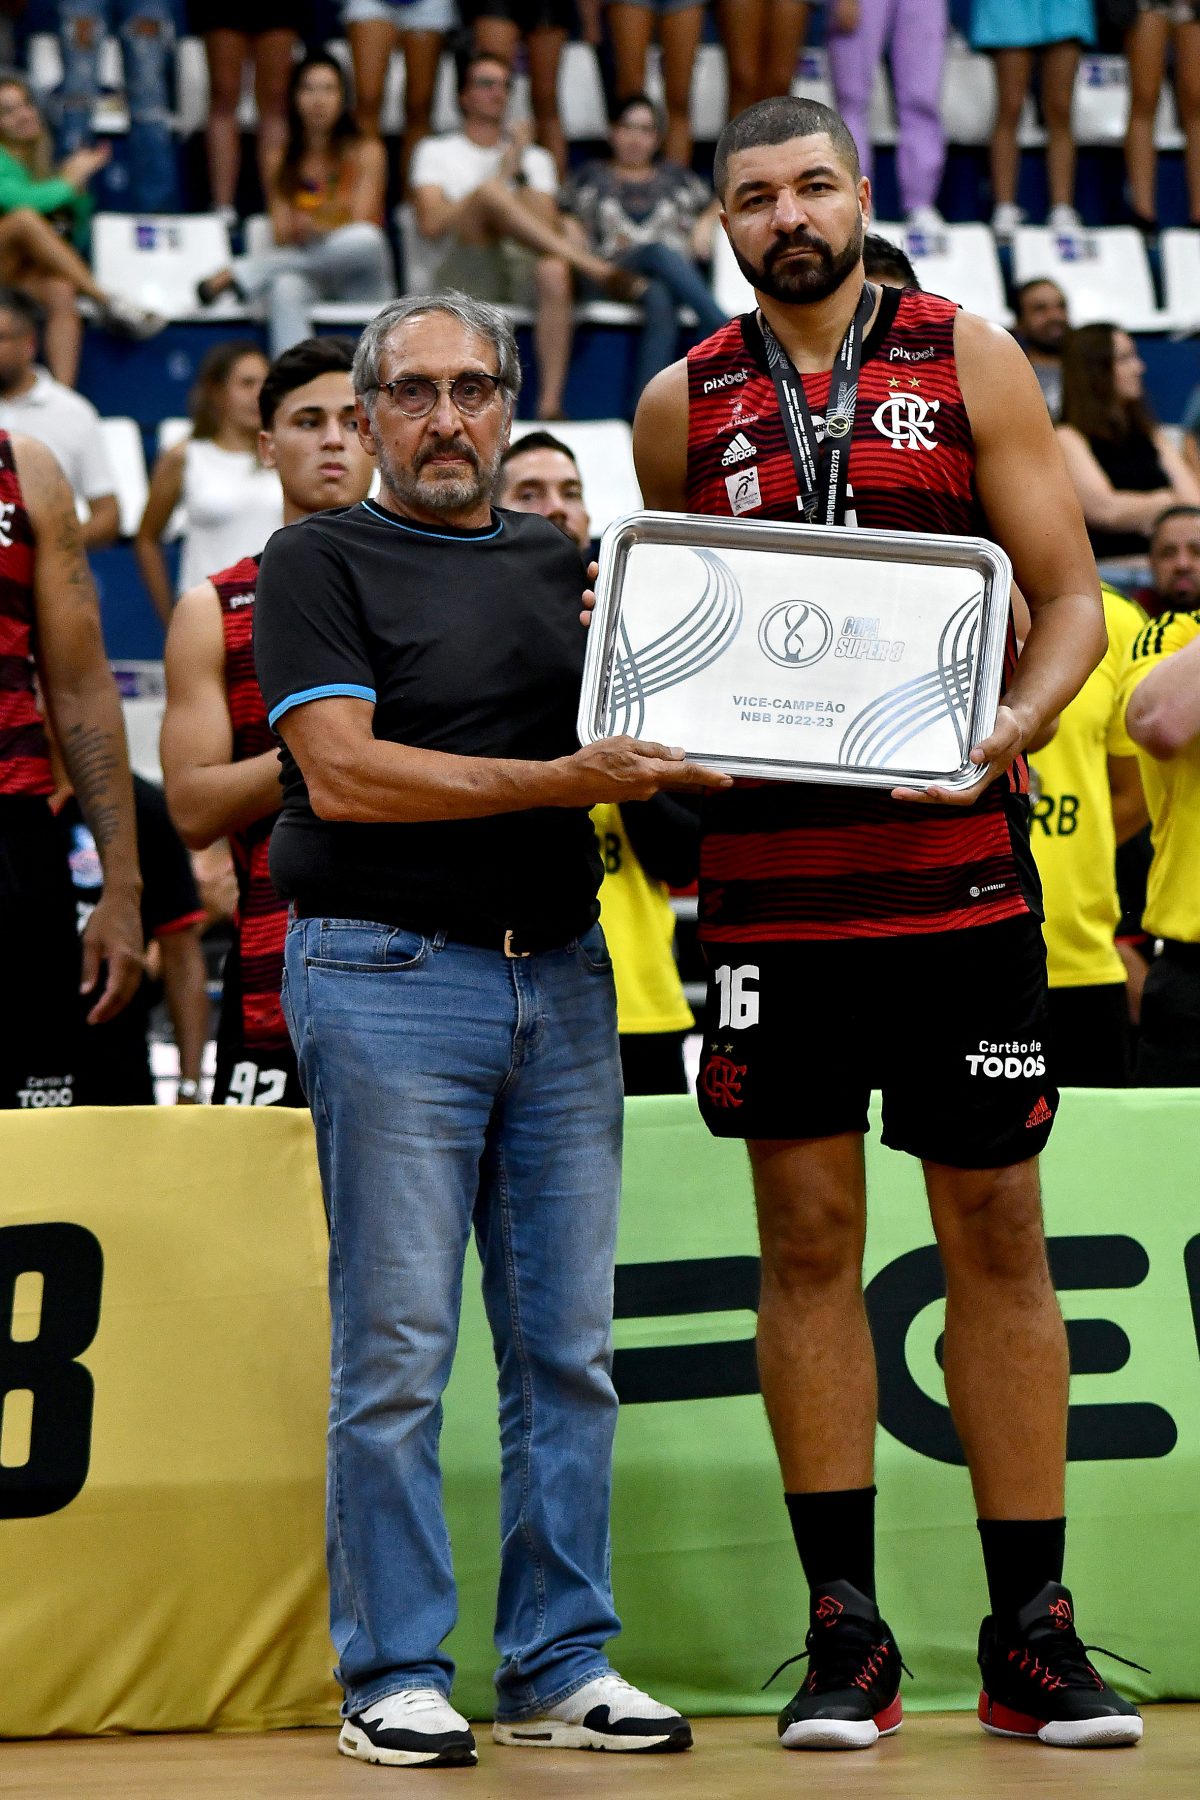 Flamengo vence o Pato Basquete em jogo equilibrado pelo NBB